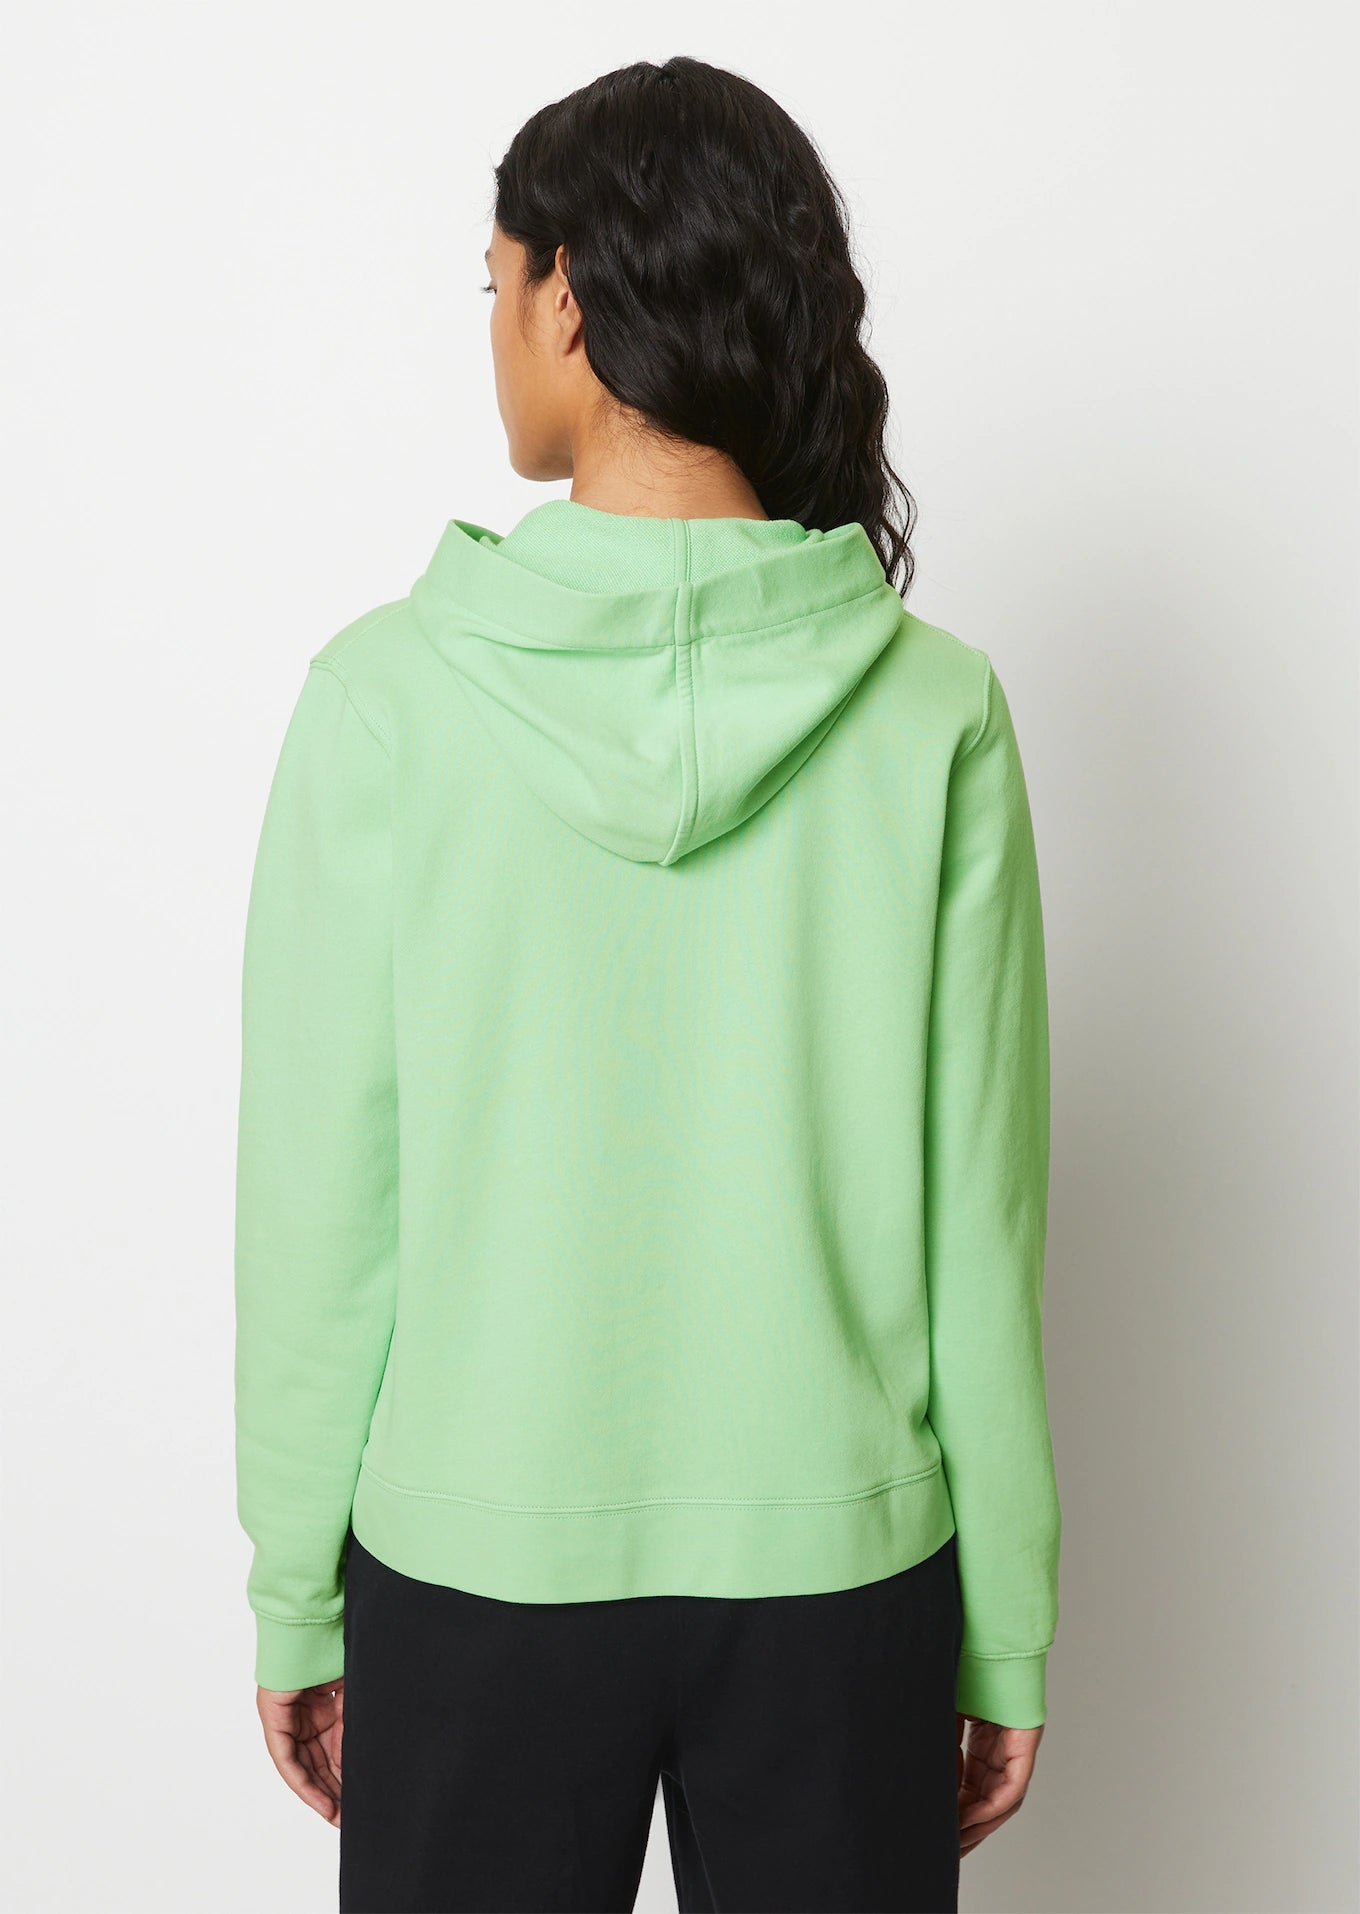 Hooded Sweatshirt in Pure Mint